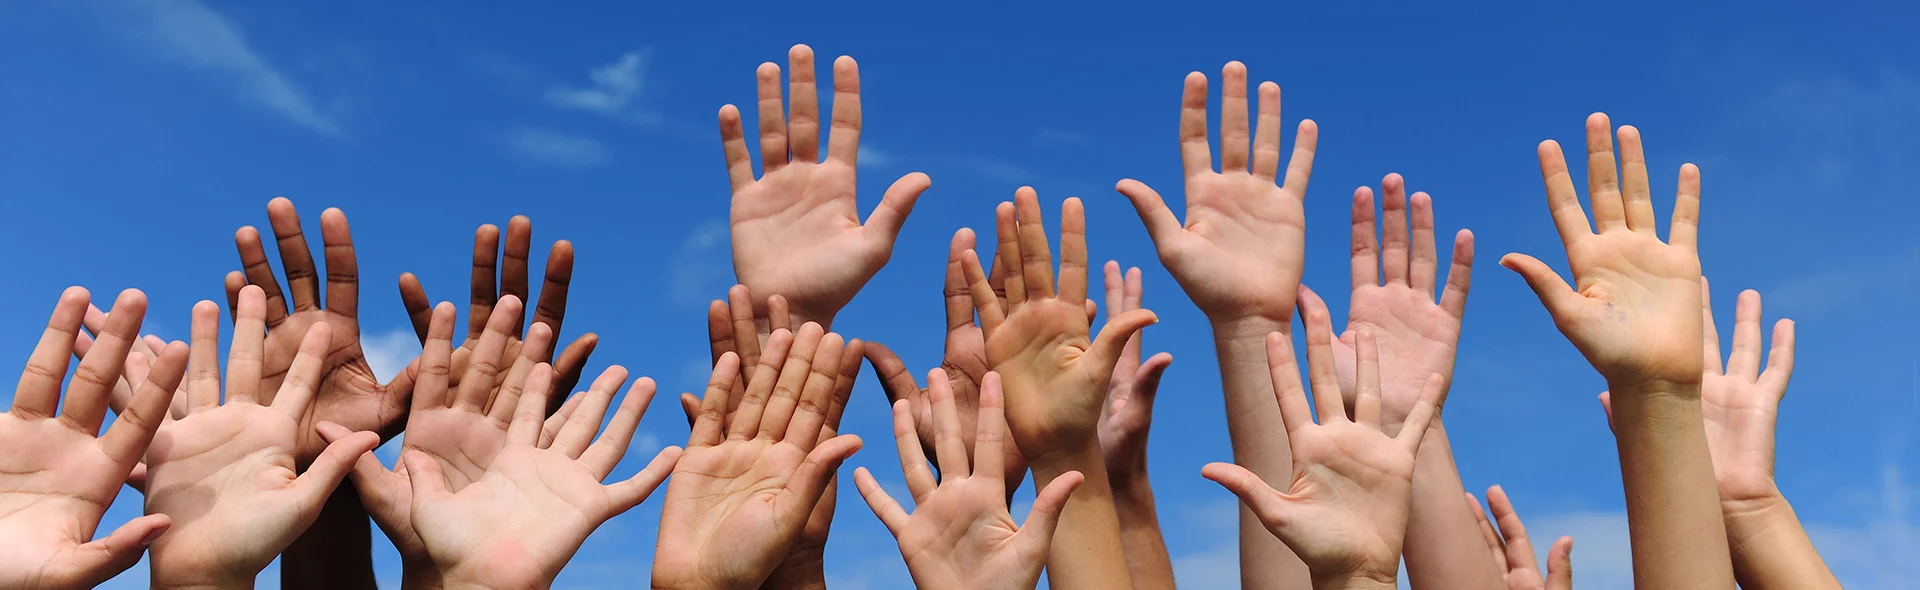 Symbolbild für universelle Menschenrechte: viele unterschiedliche Hände werden in die Luft gehalten